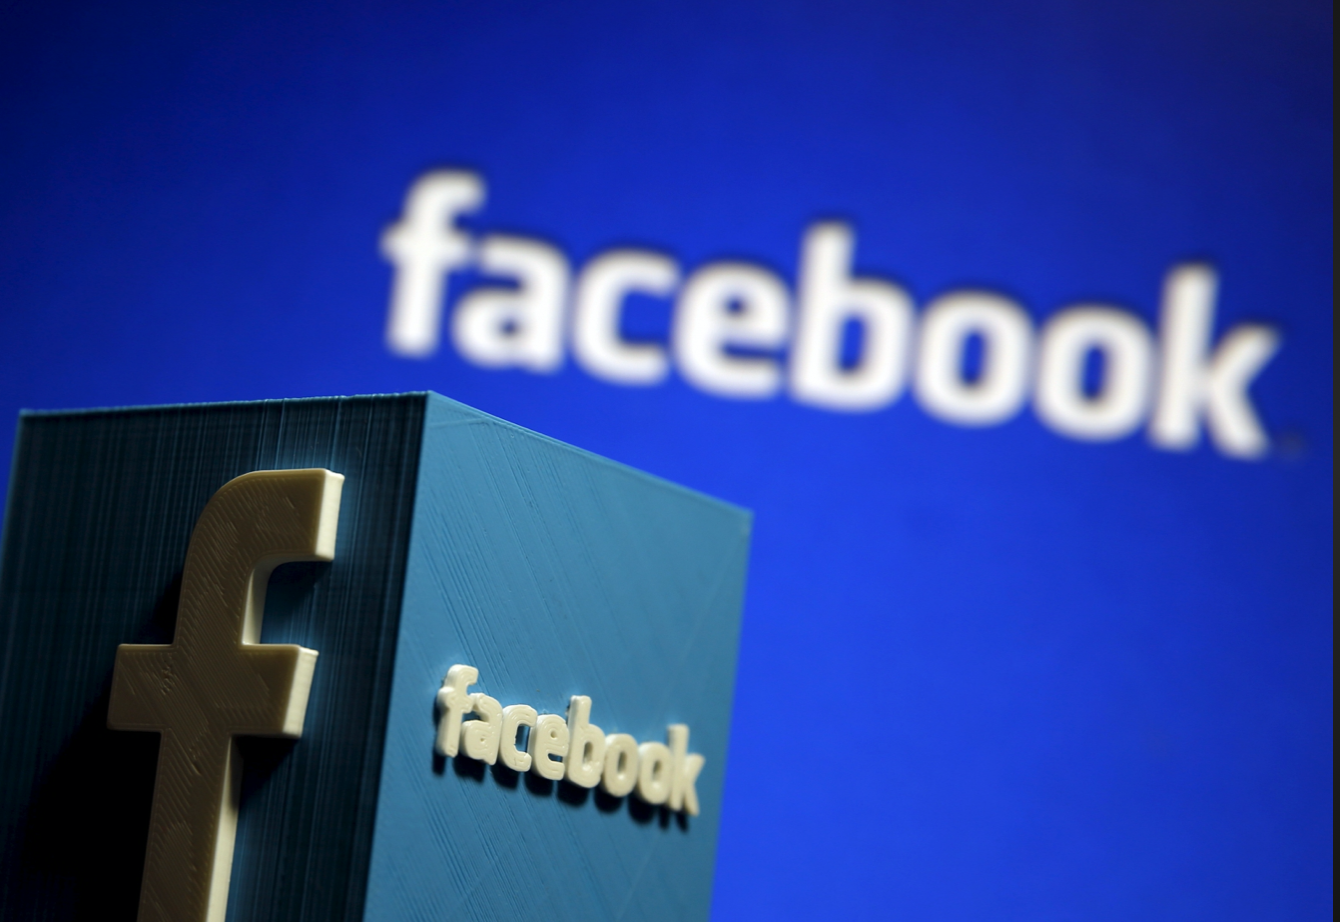 Why is Facebook rebranding?